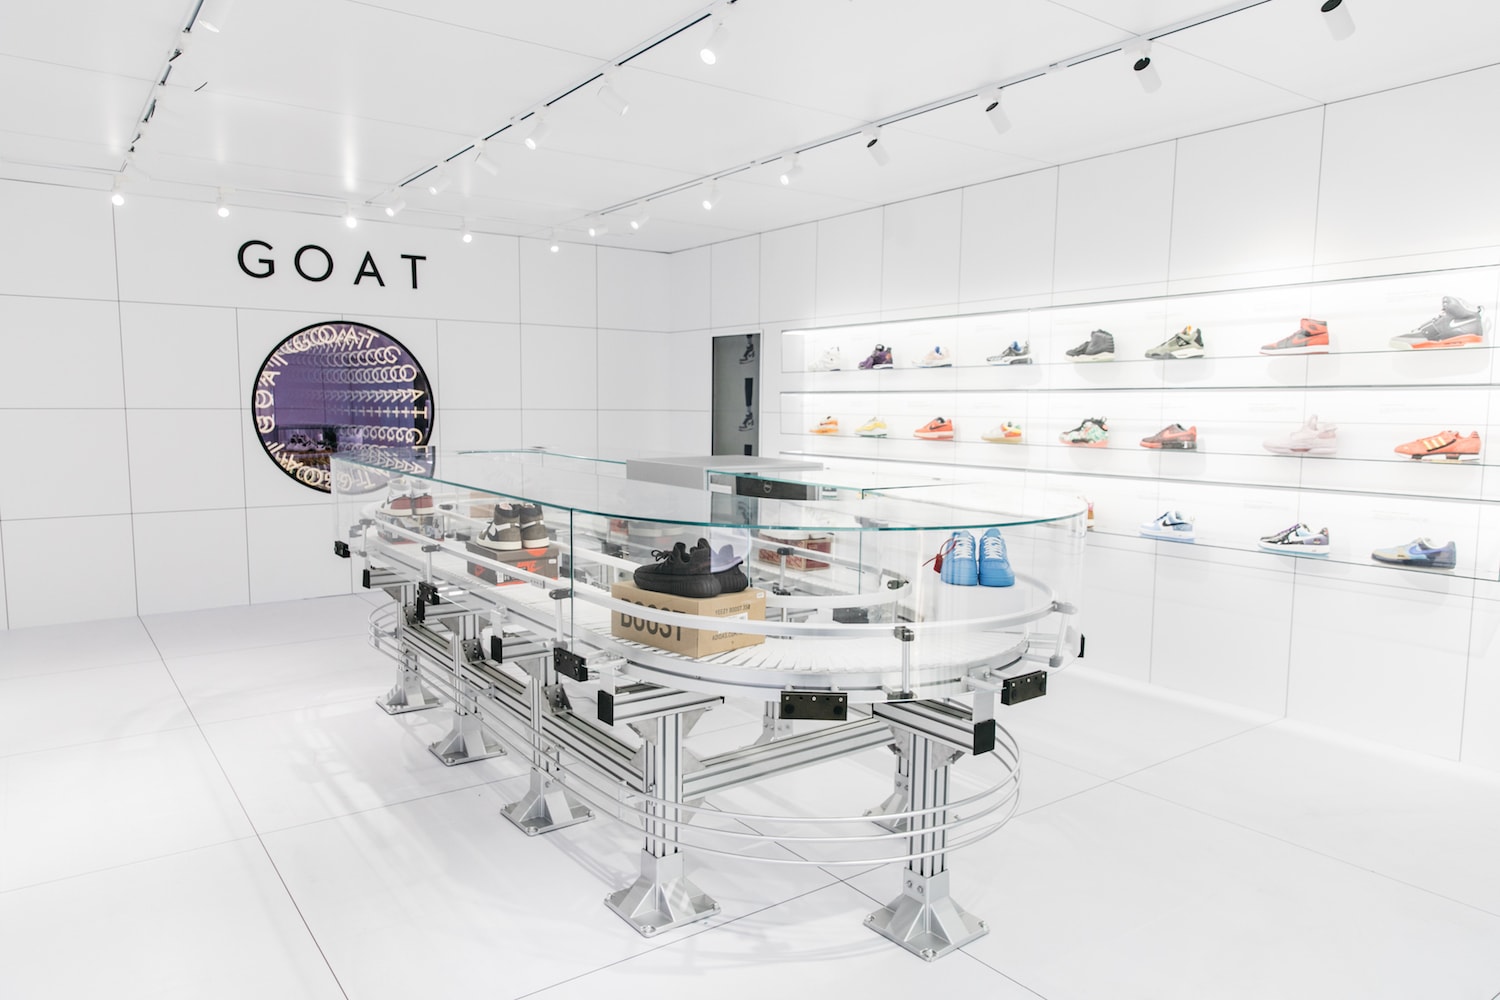 全球球鞋交易平台 GOAT 正式進駐中國